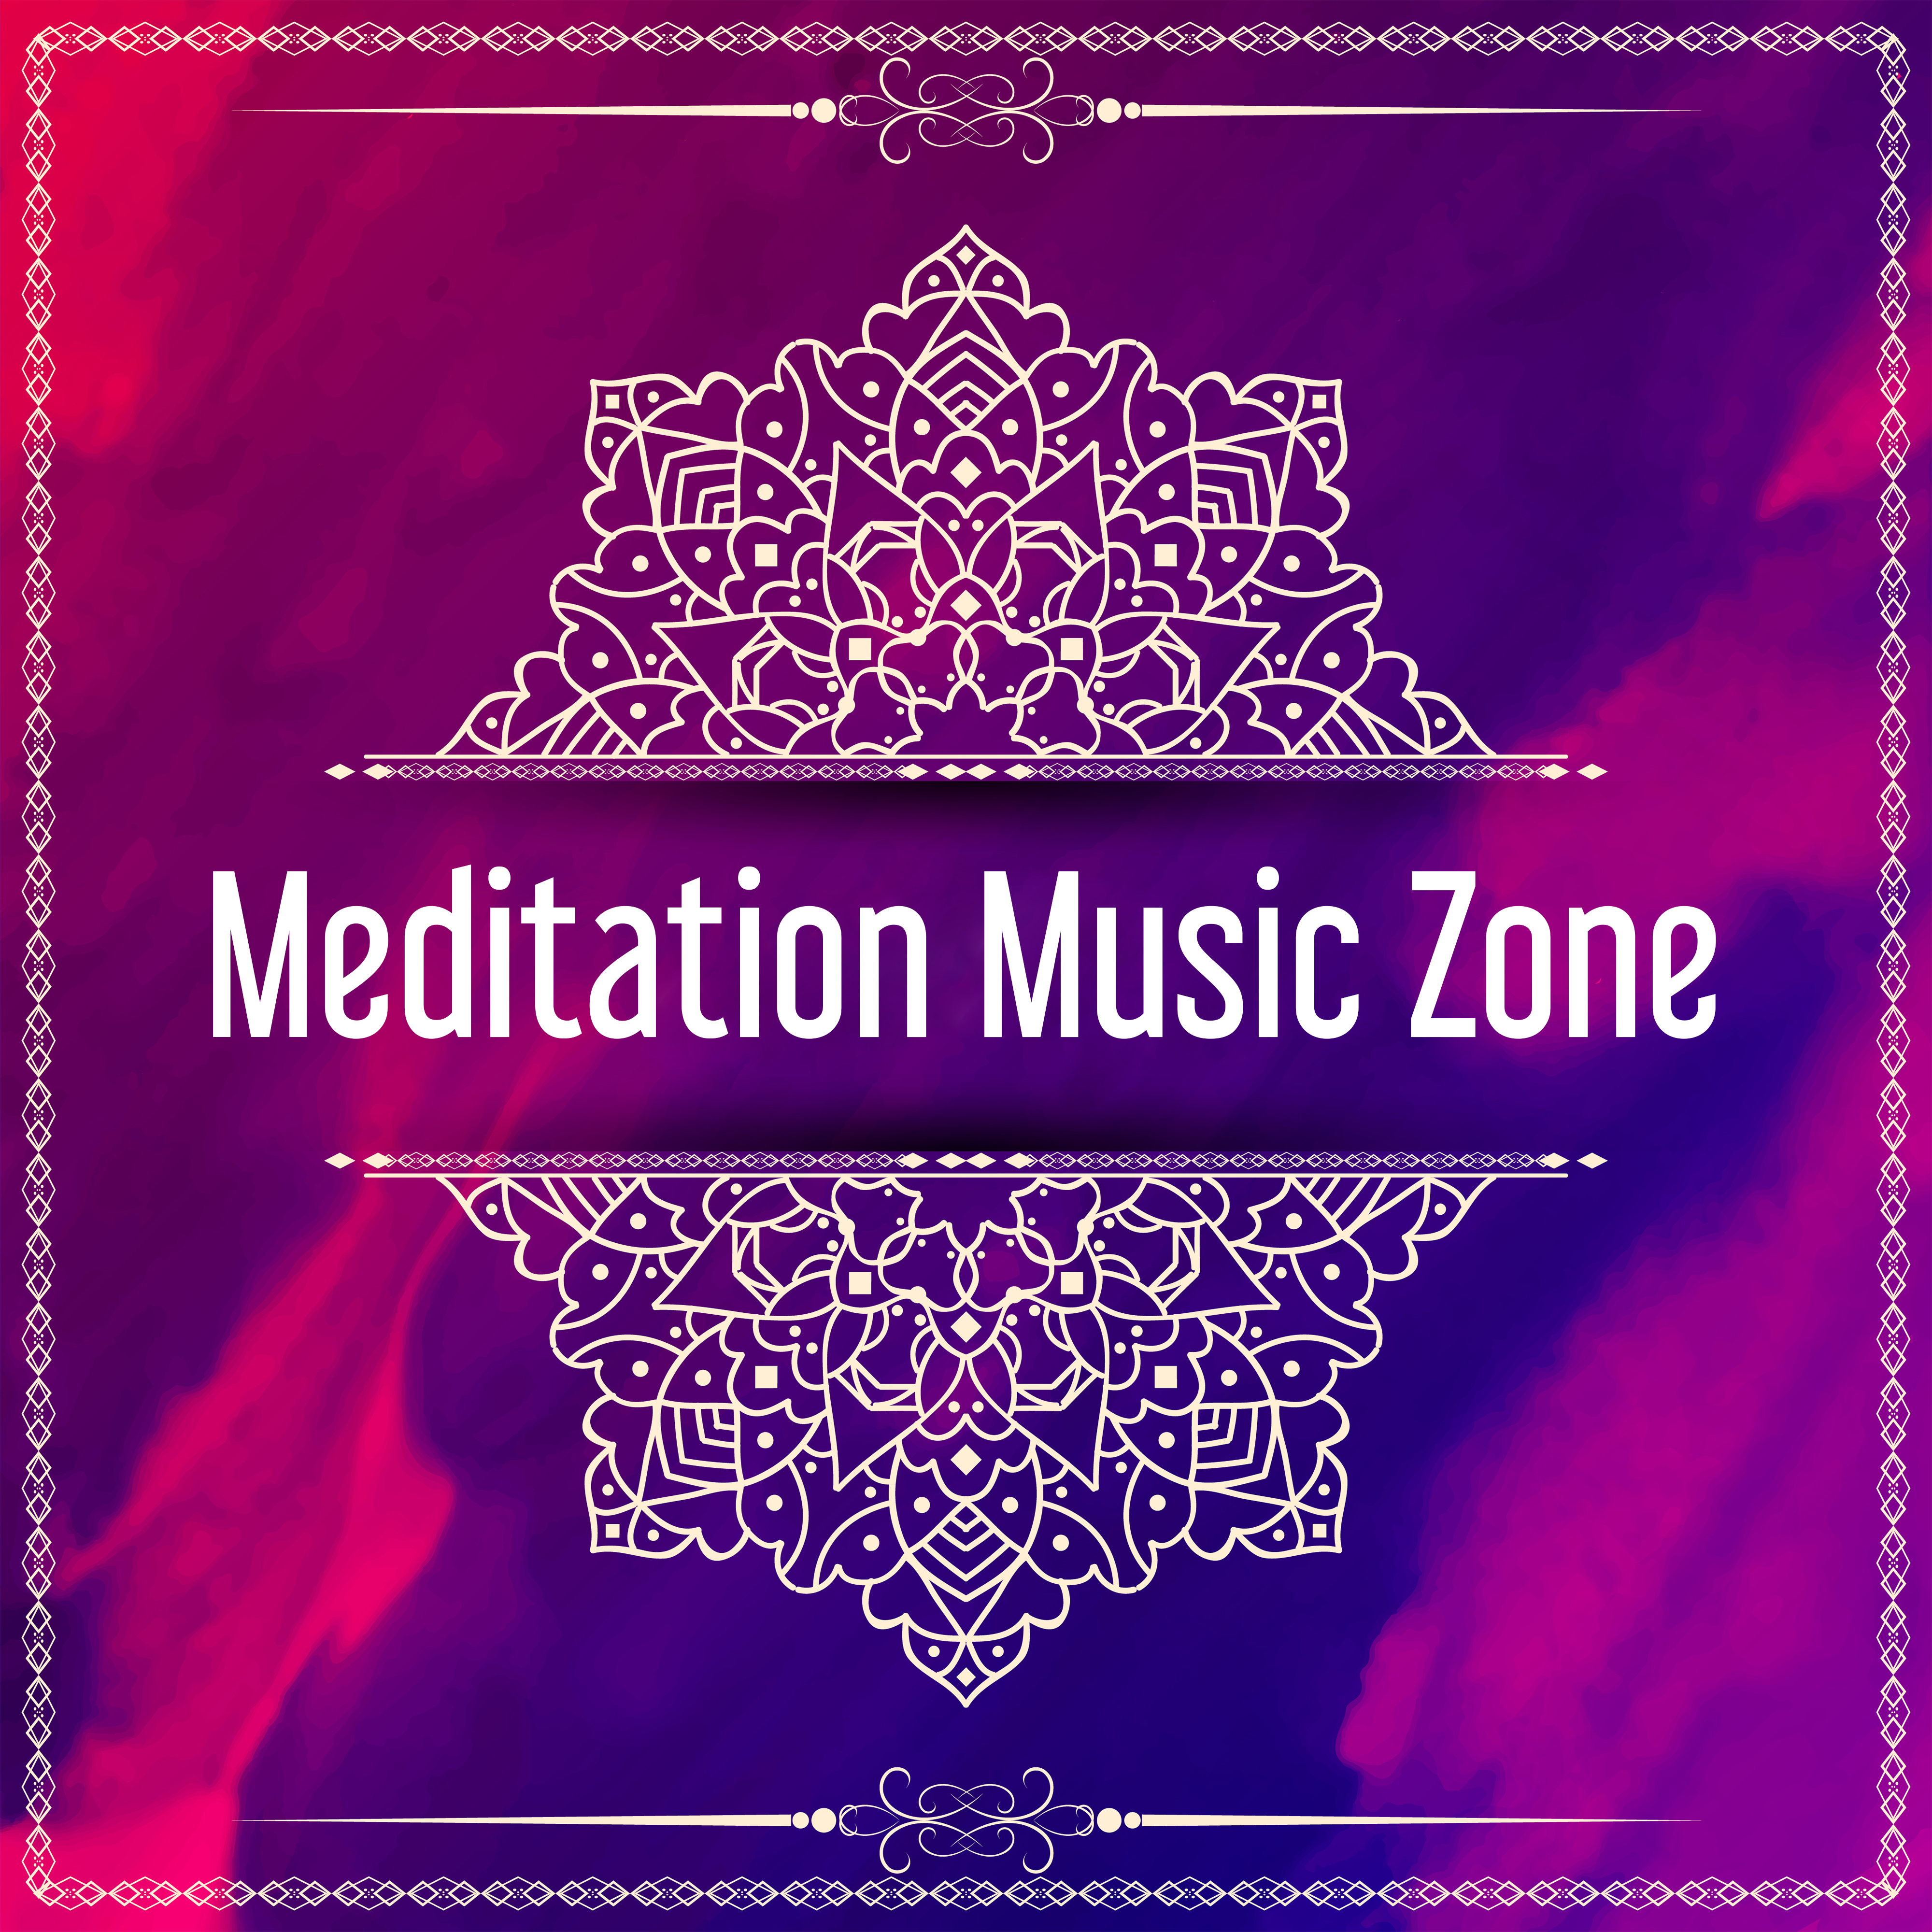 Meditation Zone Yoga